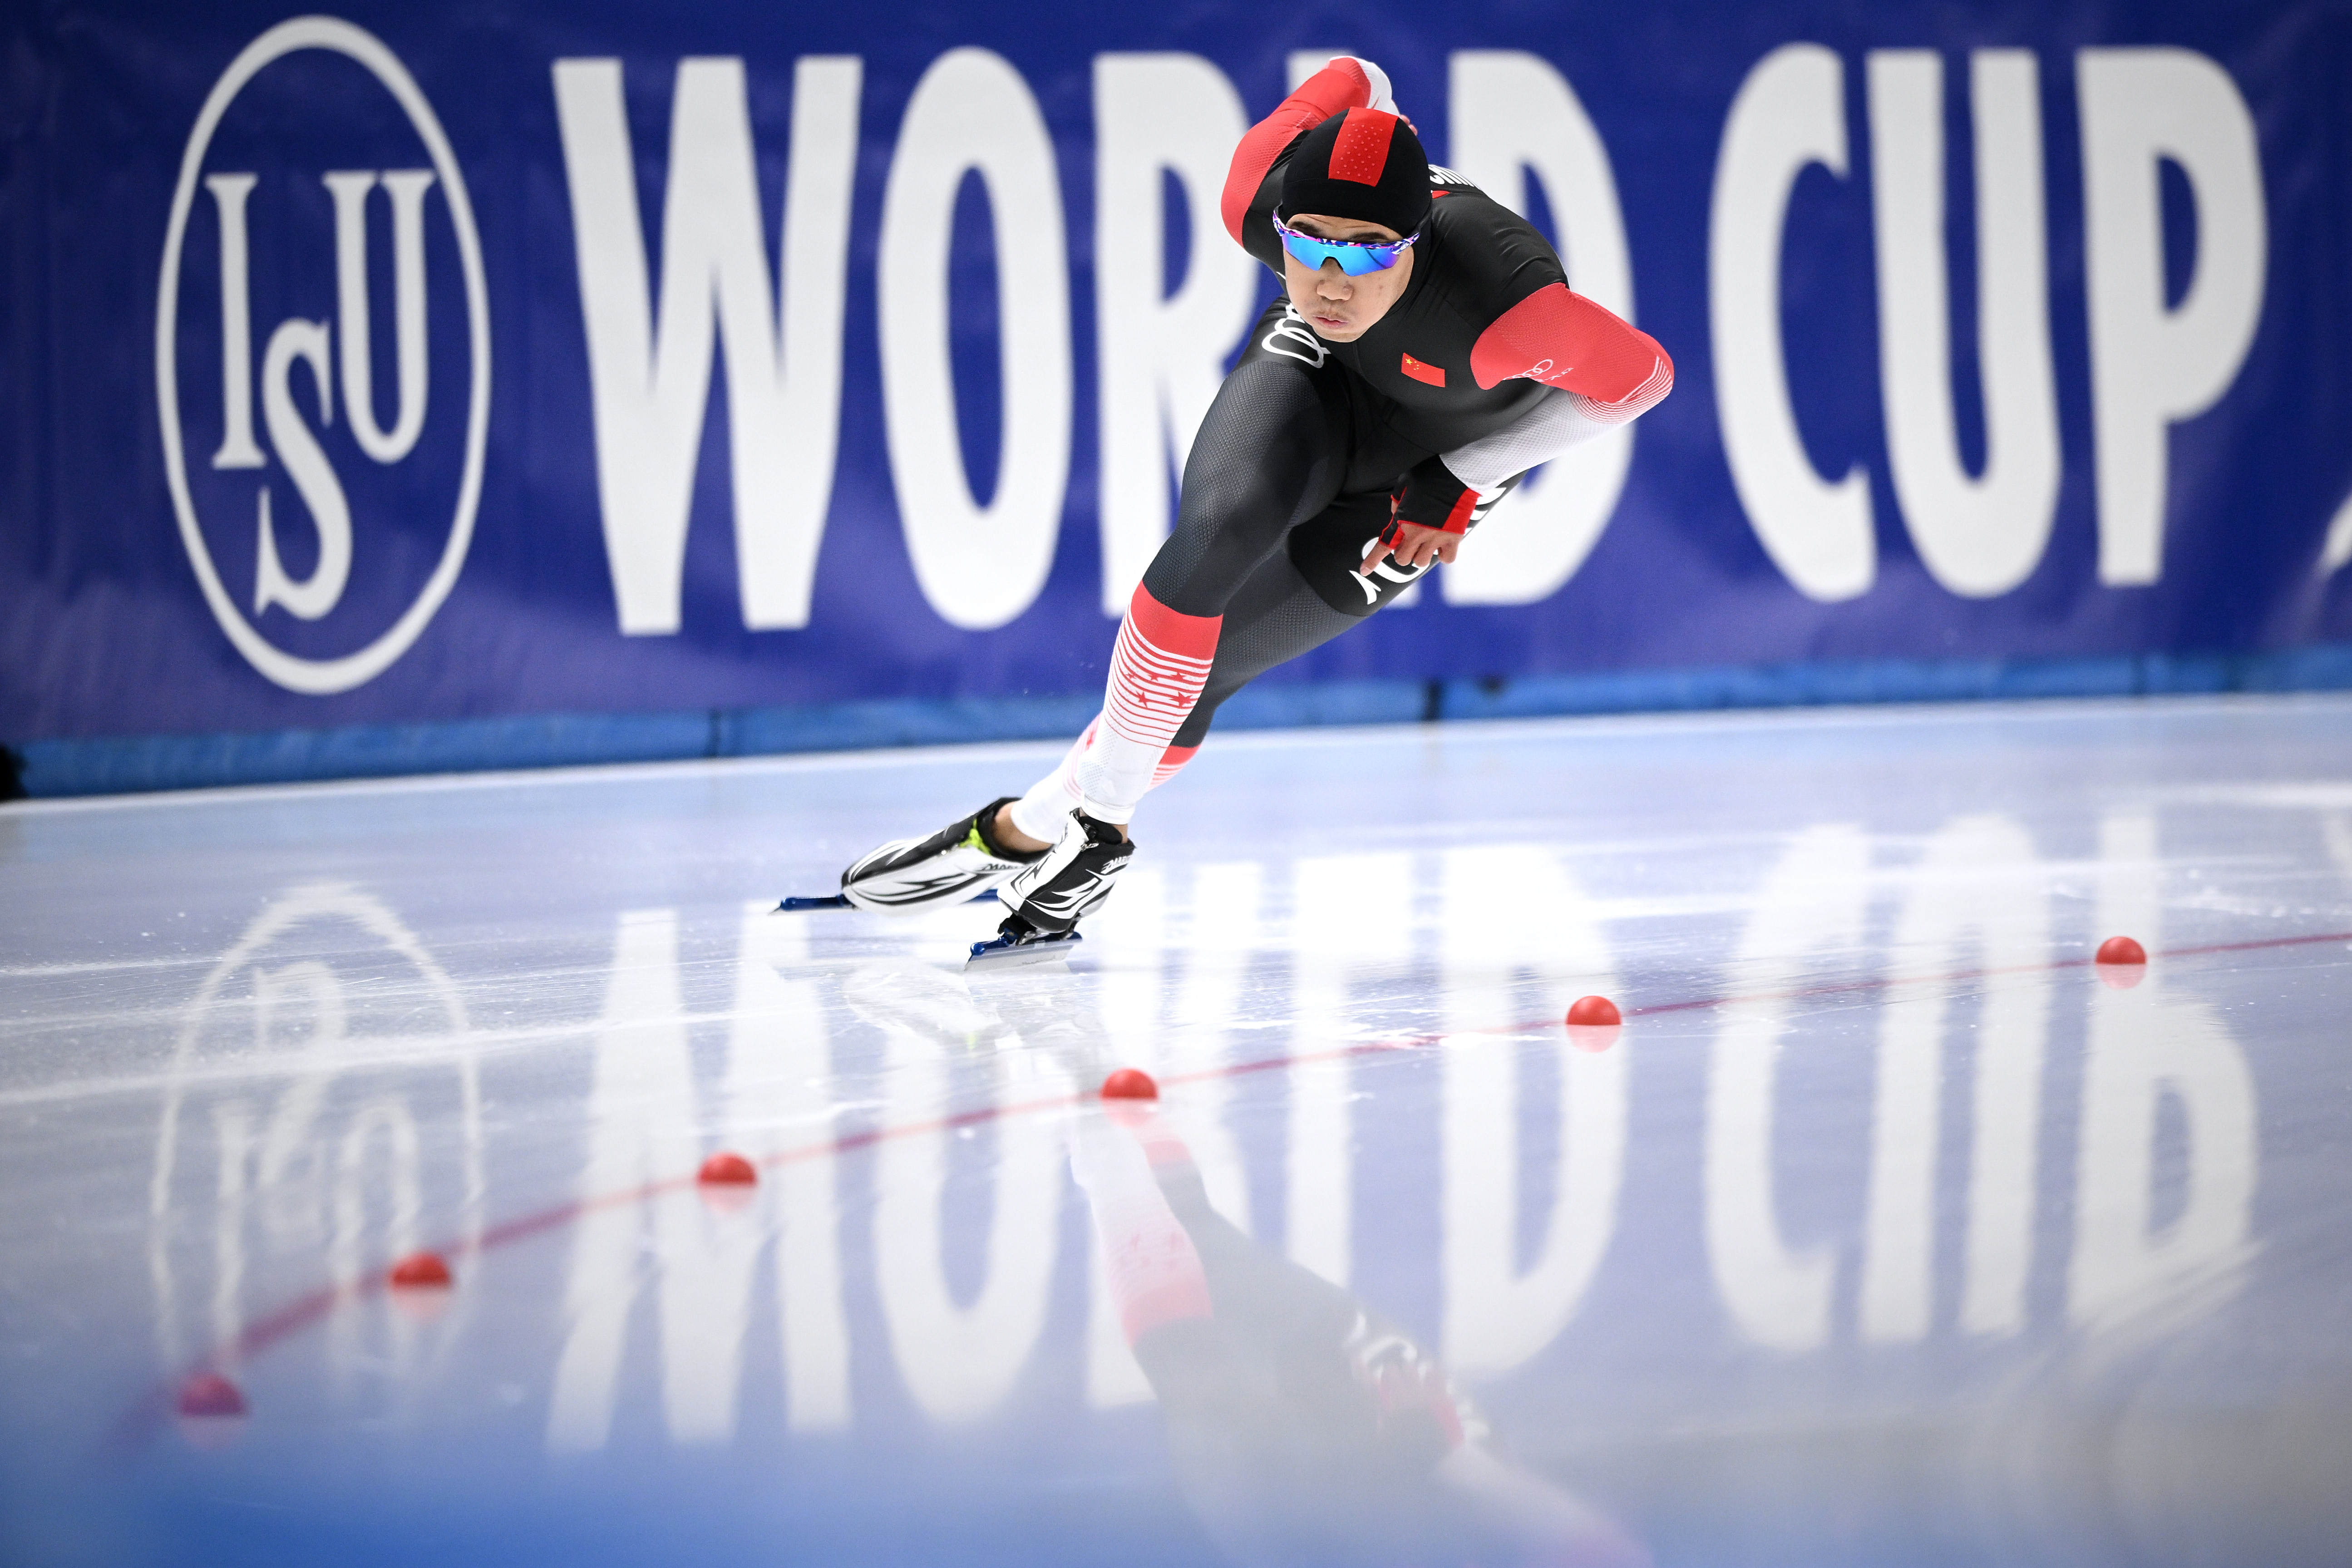 速度滑冰女子团队追逐赛荷兰夺冠破奥运纪录_虎扑综合体育新闻